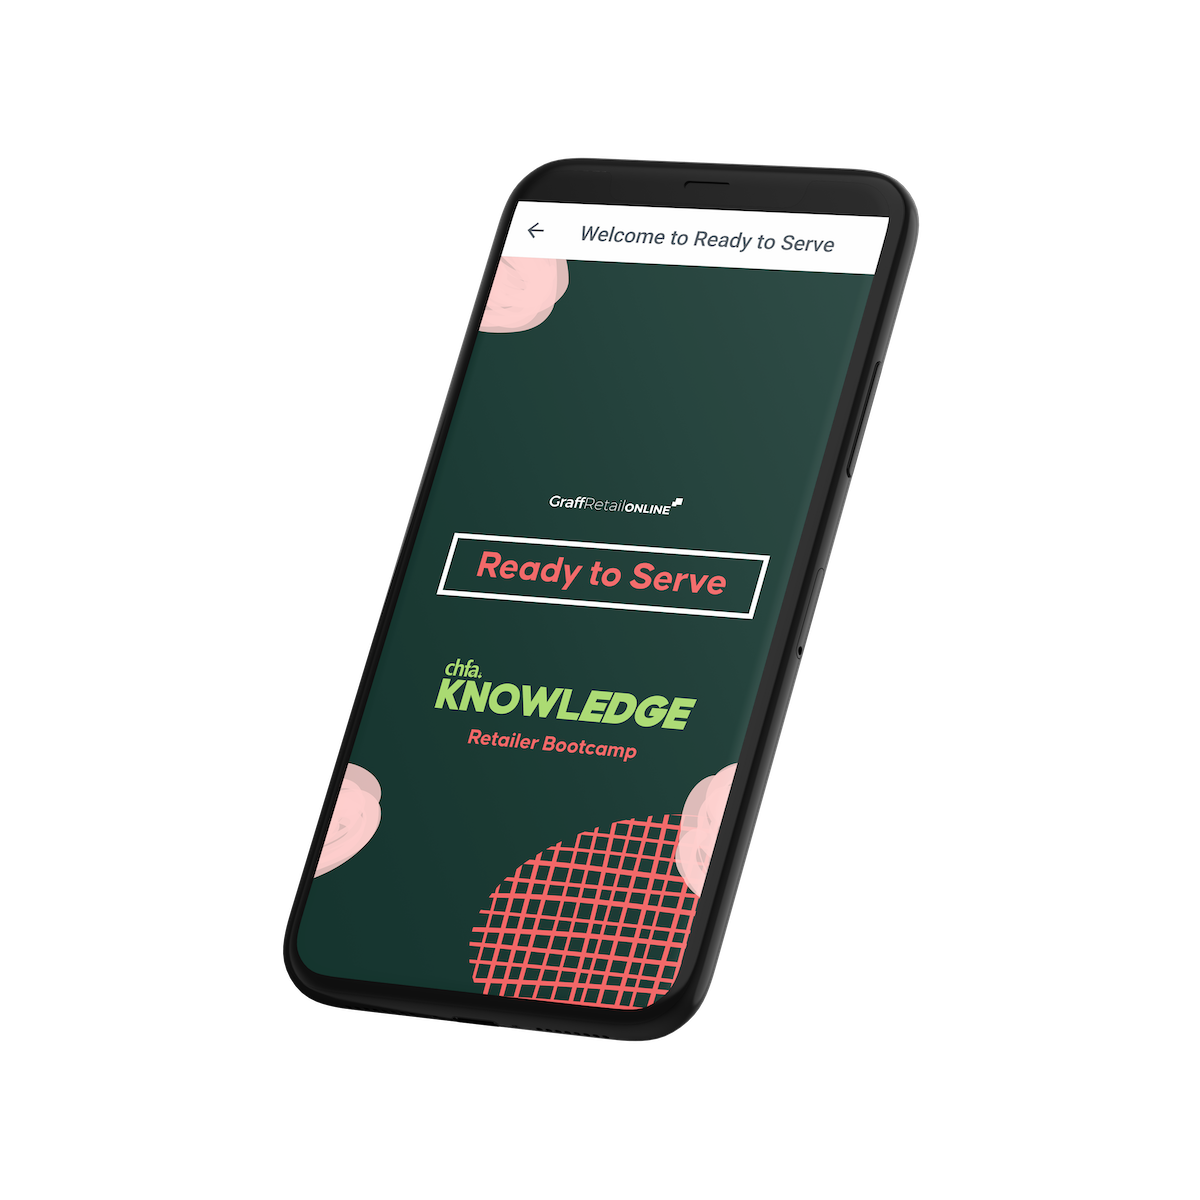 iphone mockup of CHFA KNOWLEDGE